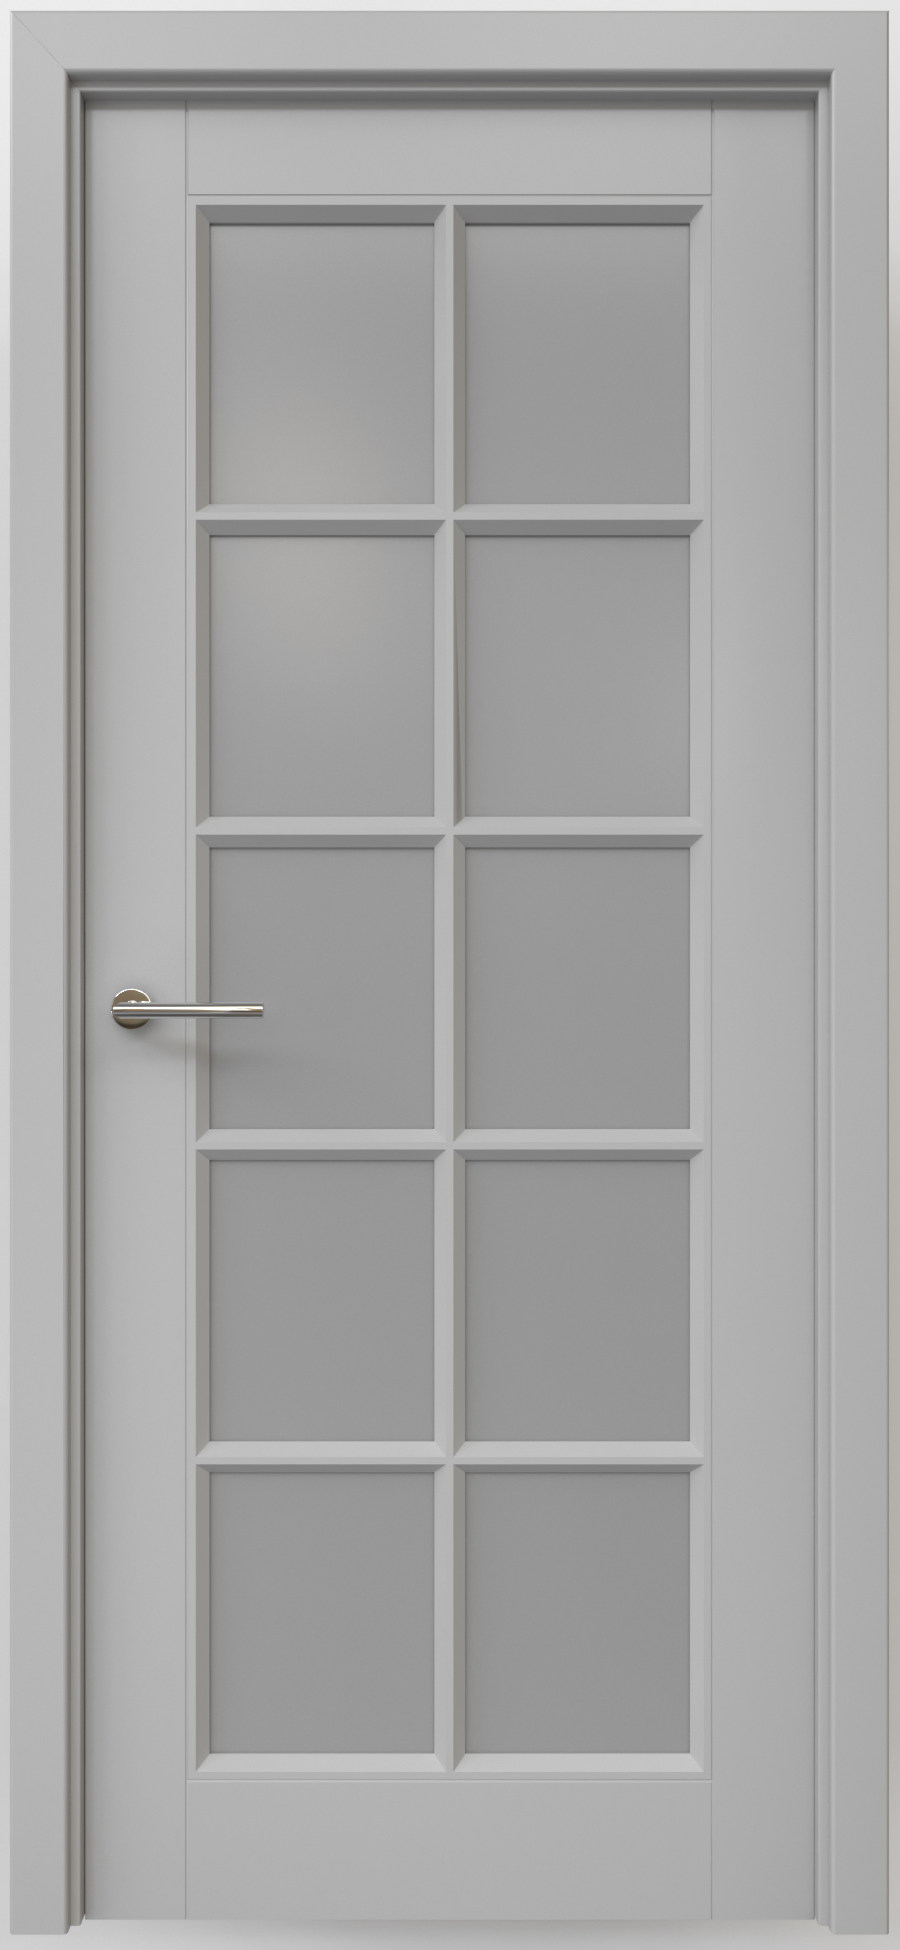 Полотно дверное остекленное Эмаль Классика-5 ПРАВОЕ 900 серый стекло мателюкс (защелка маг.)